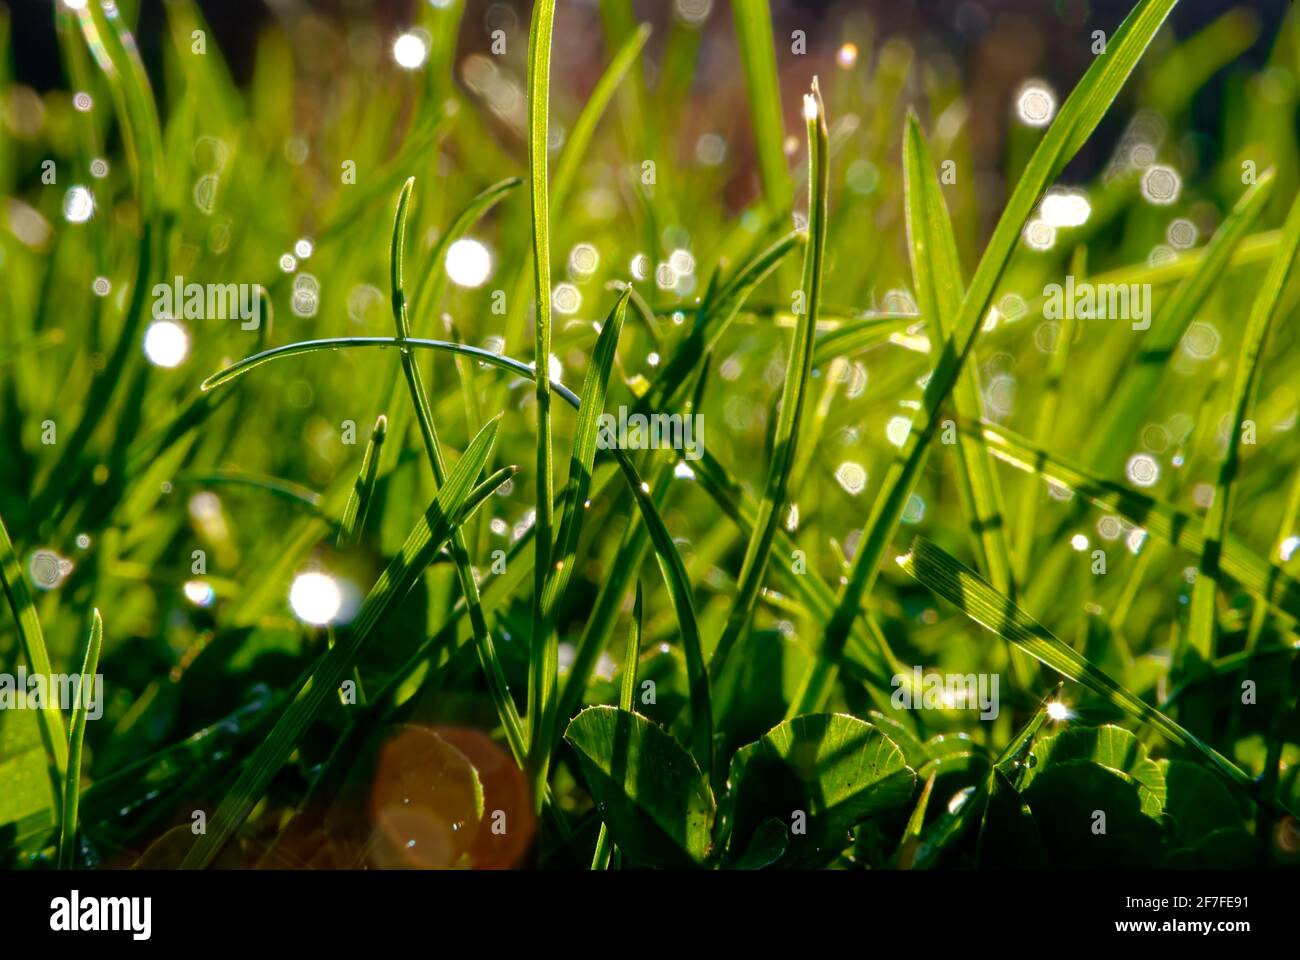 Grass in macro. Lush lawn in the morning sun. Stock Photo